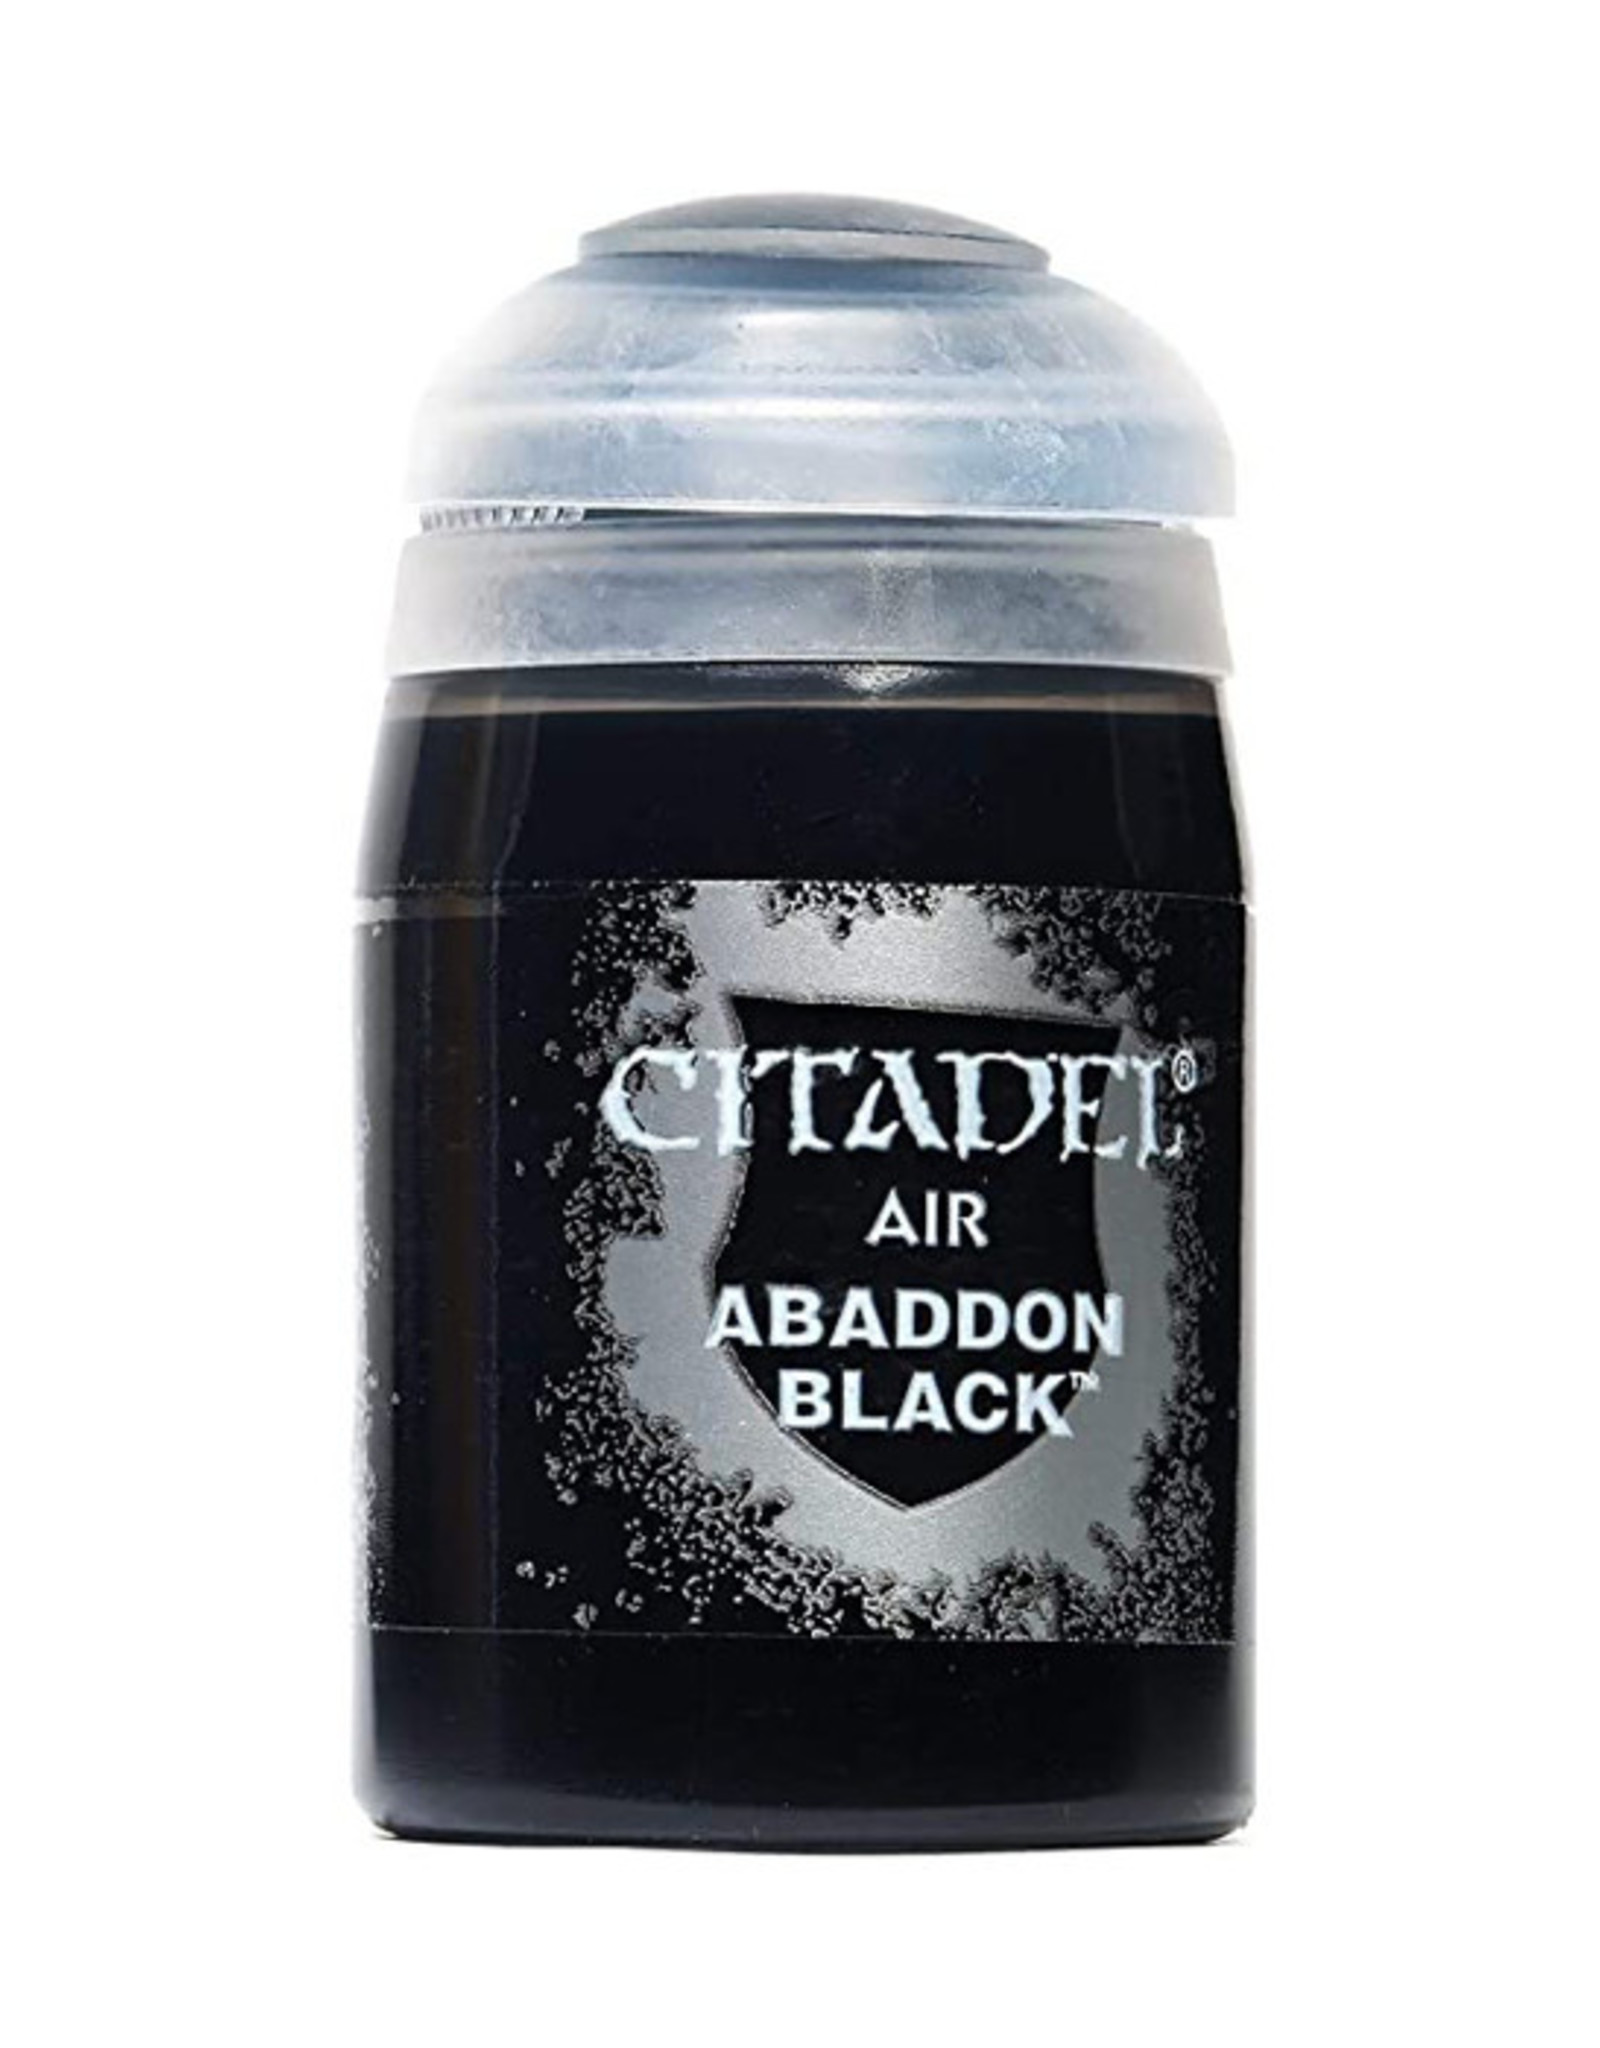 Citadel Citadel Colour: Air - Abaddon Black